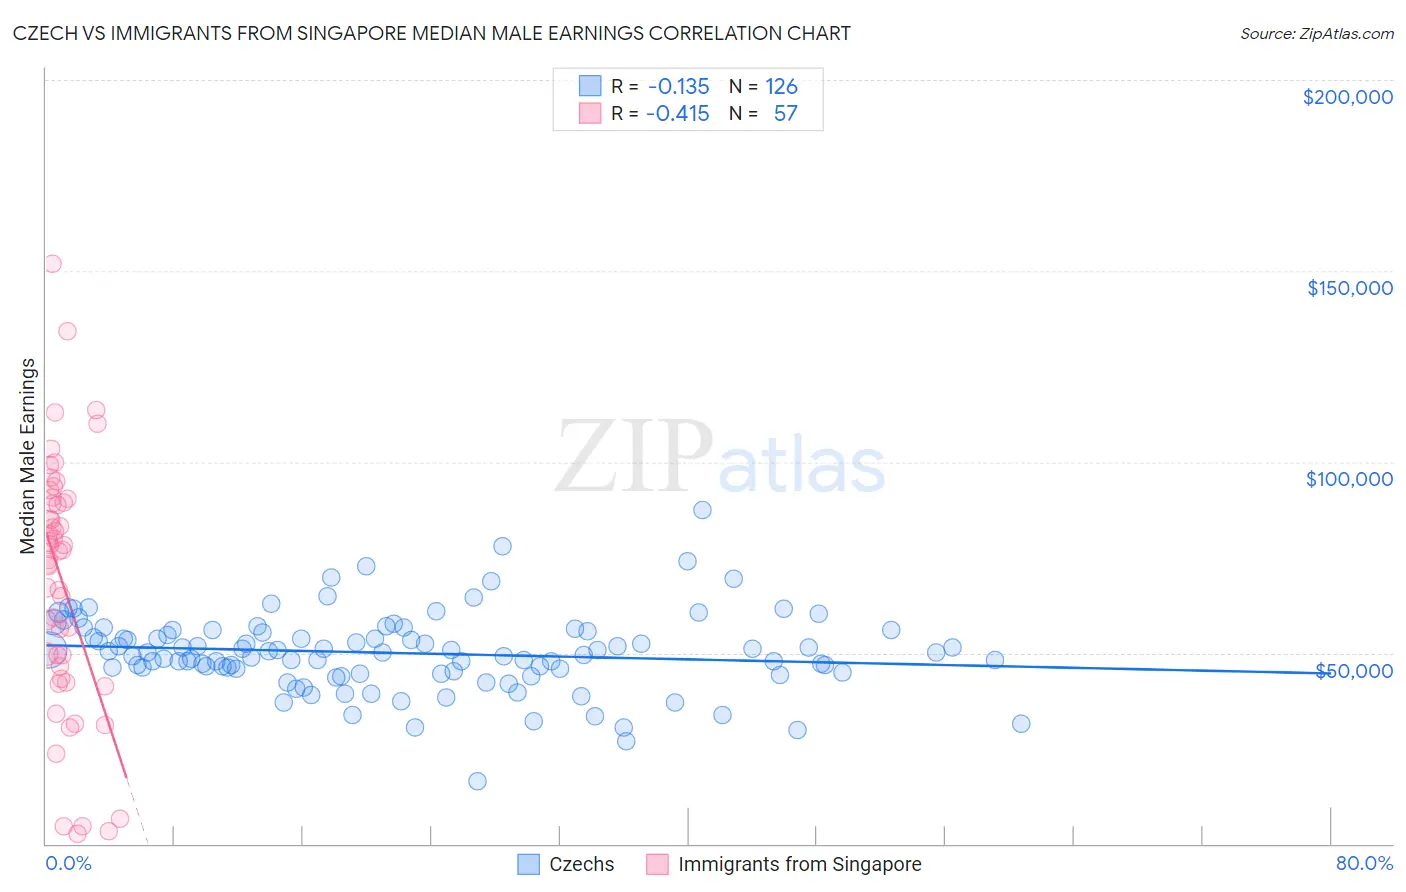 Czech vs Immigrants from Singapore Median Male Earnings